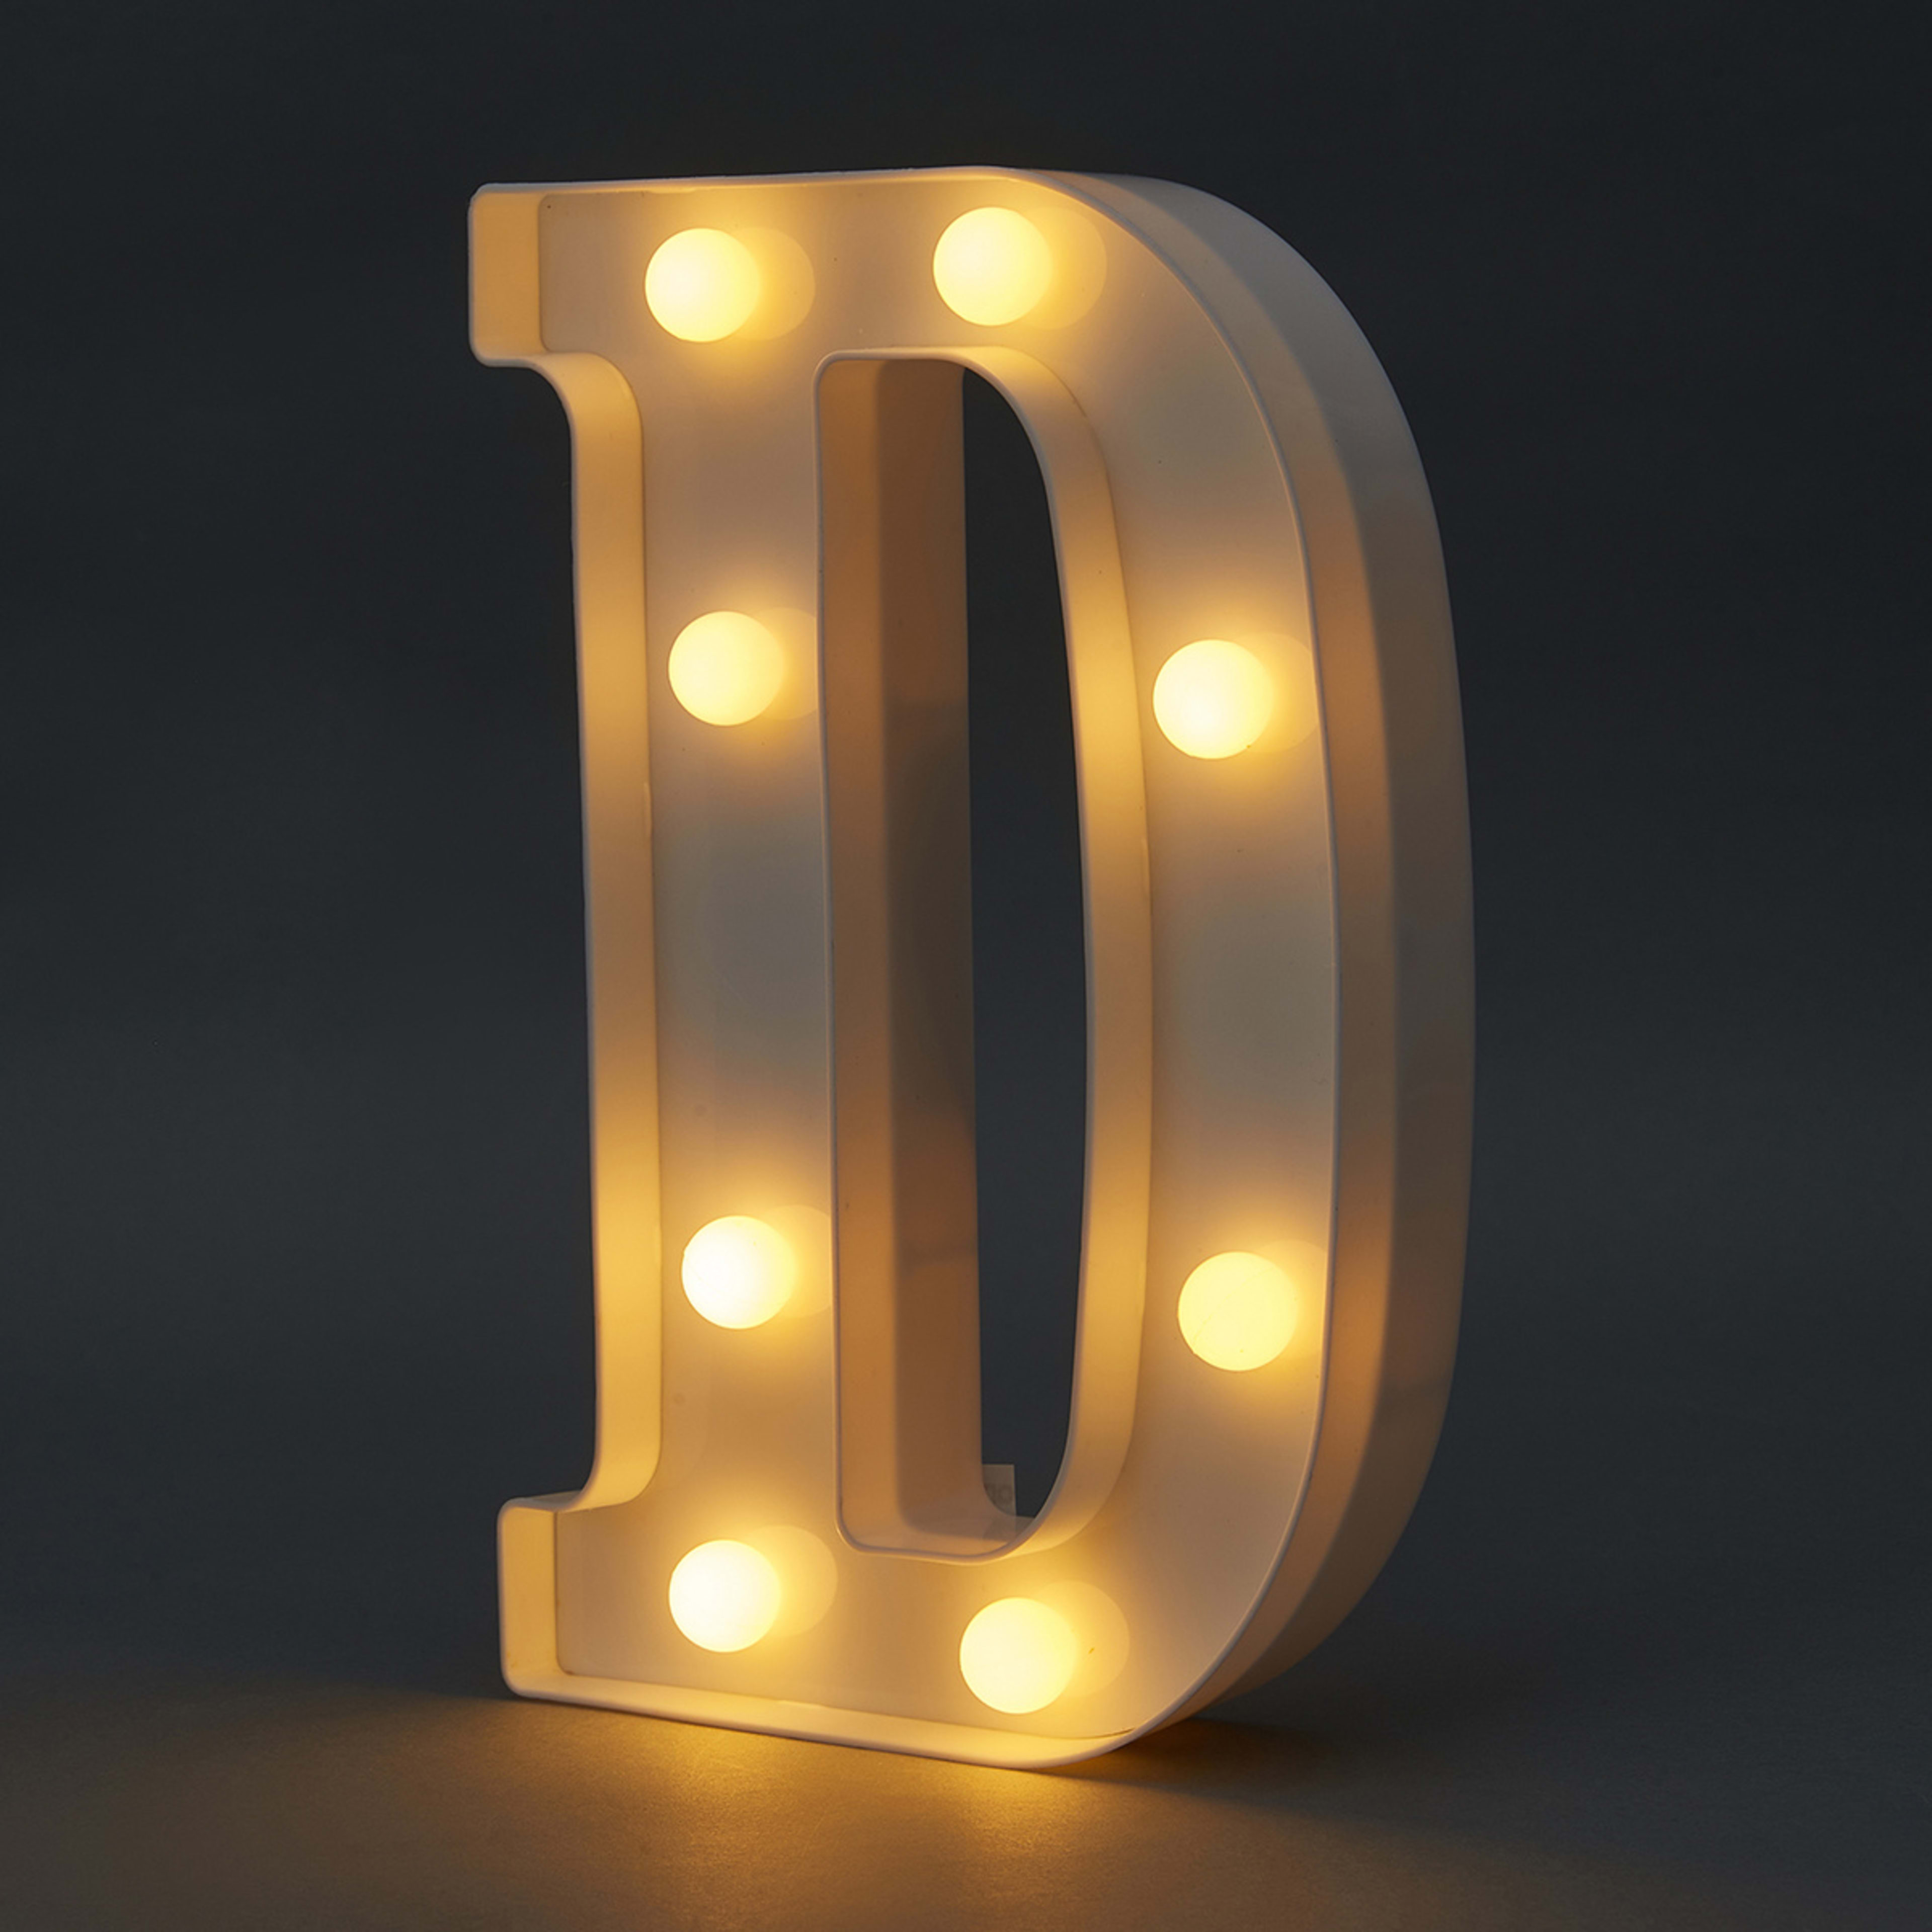 Light Up Letter - D - Kmart